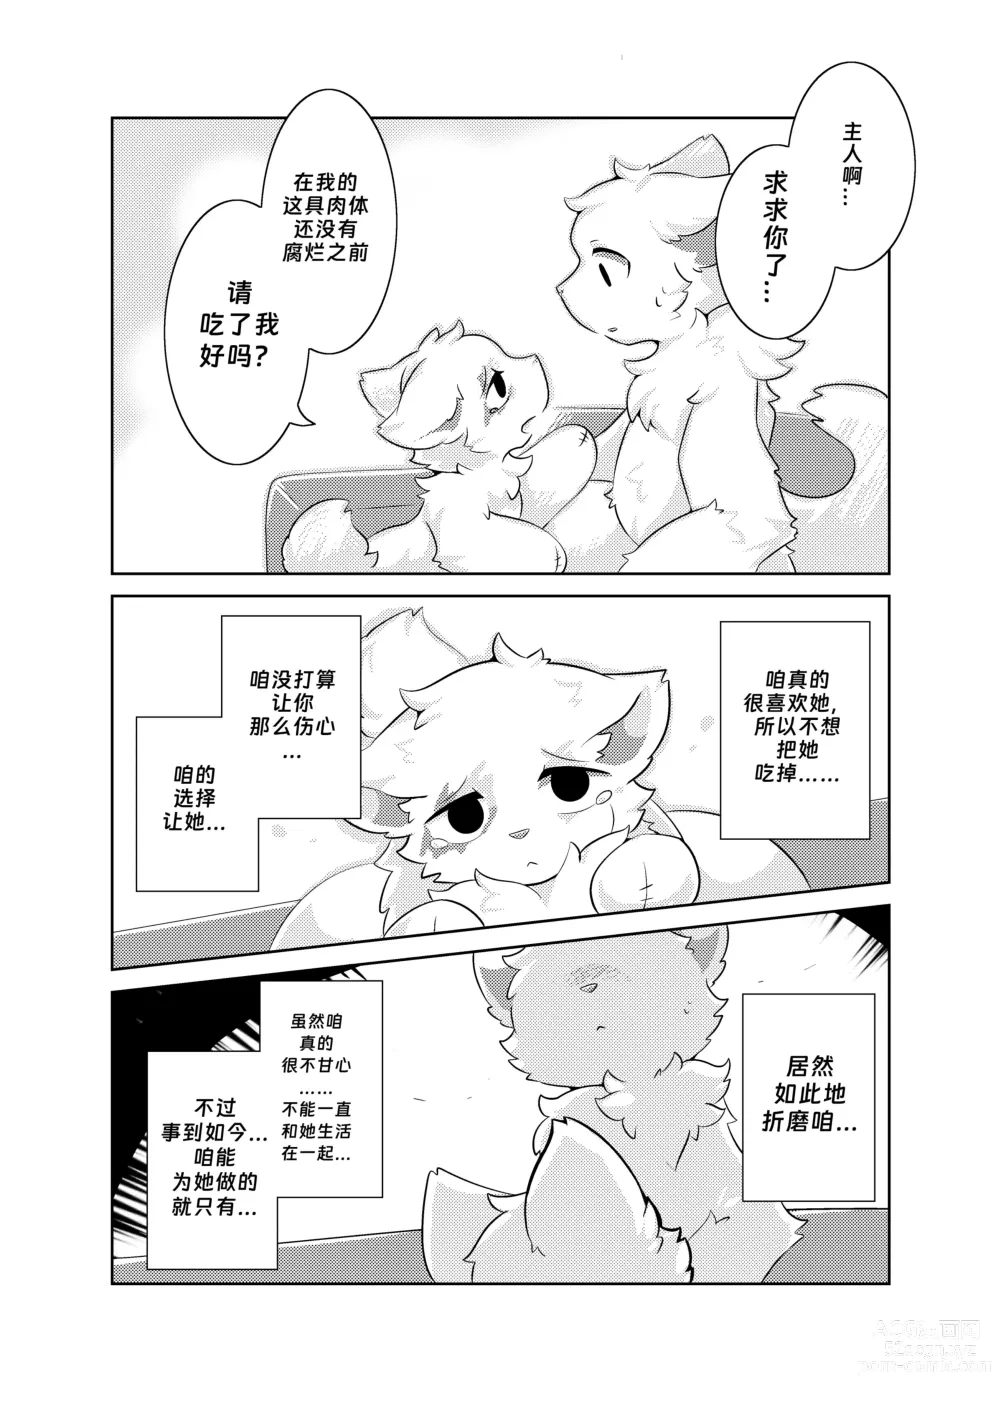 Page 24 of doujinshi Bokuyo motsuni no oishii seikatu.R-18G